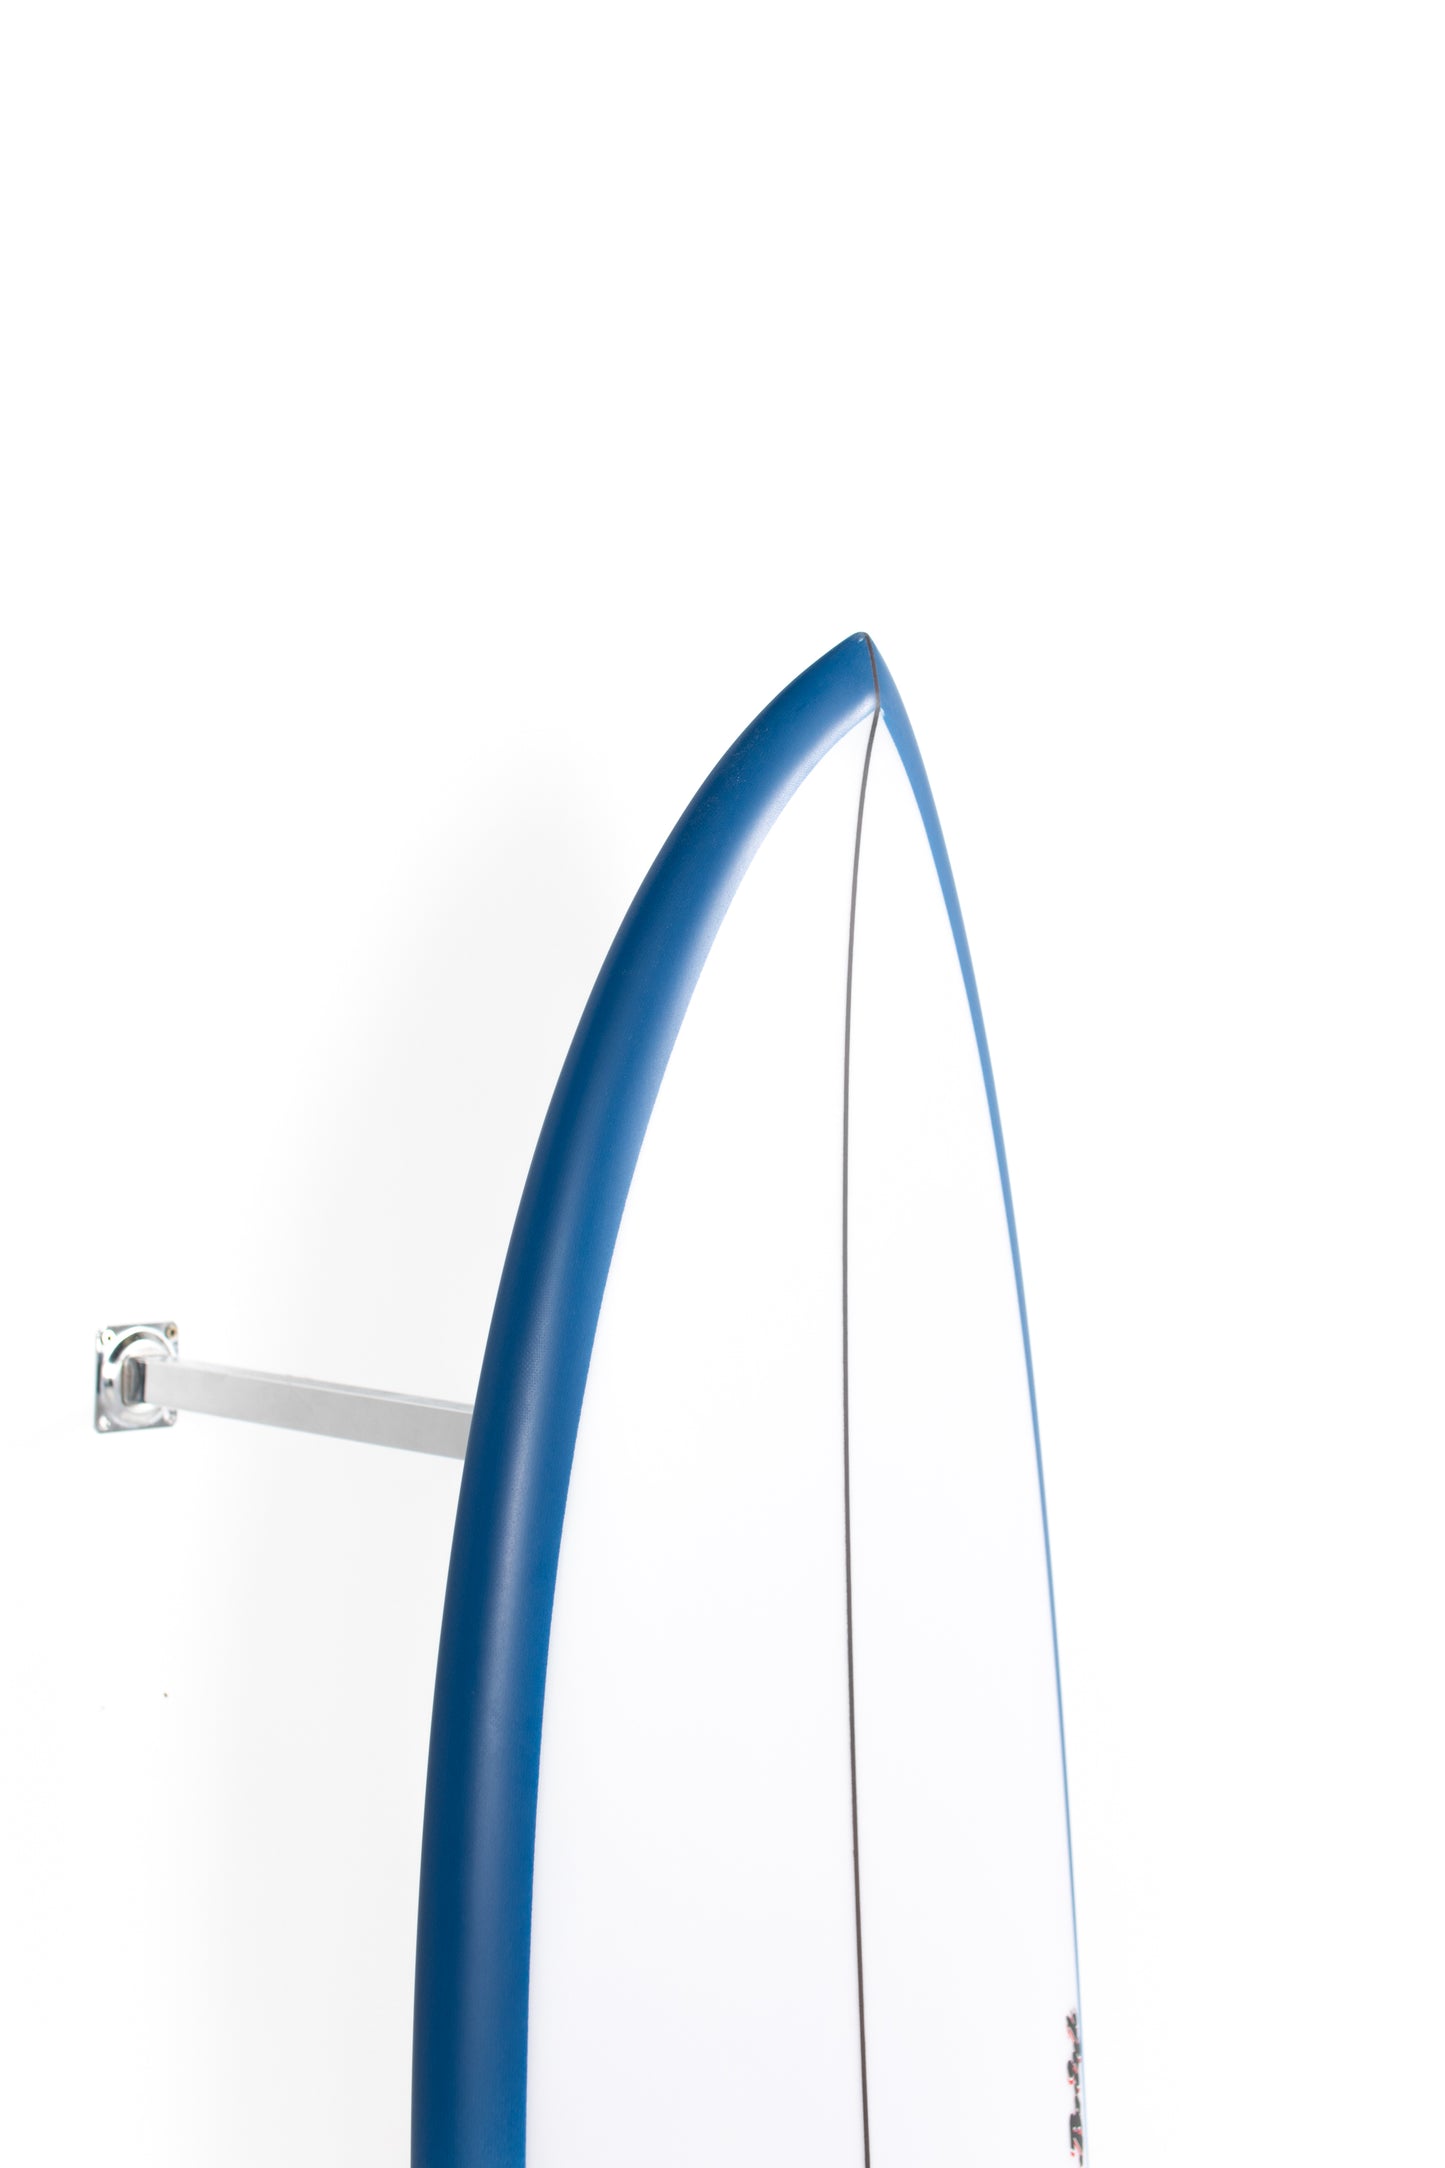 
                  
                    Pukas Surf Shop Lost Surfboard - MICK'S TAPE by Mayhem x Brink - 5’5” x 19,75 x 2,45 - 30,5L - MB00017
                  
                